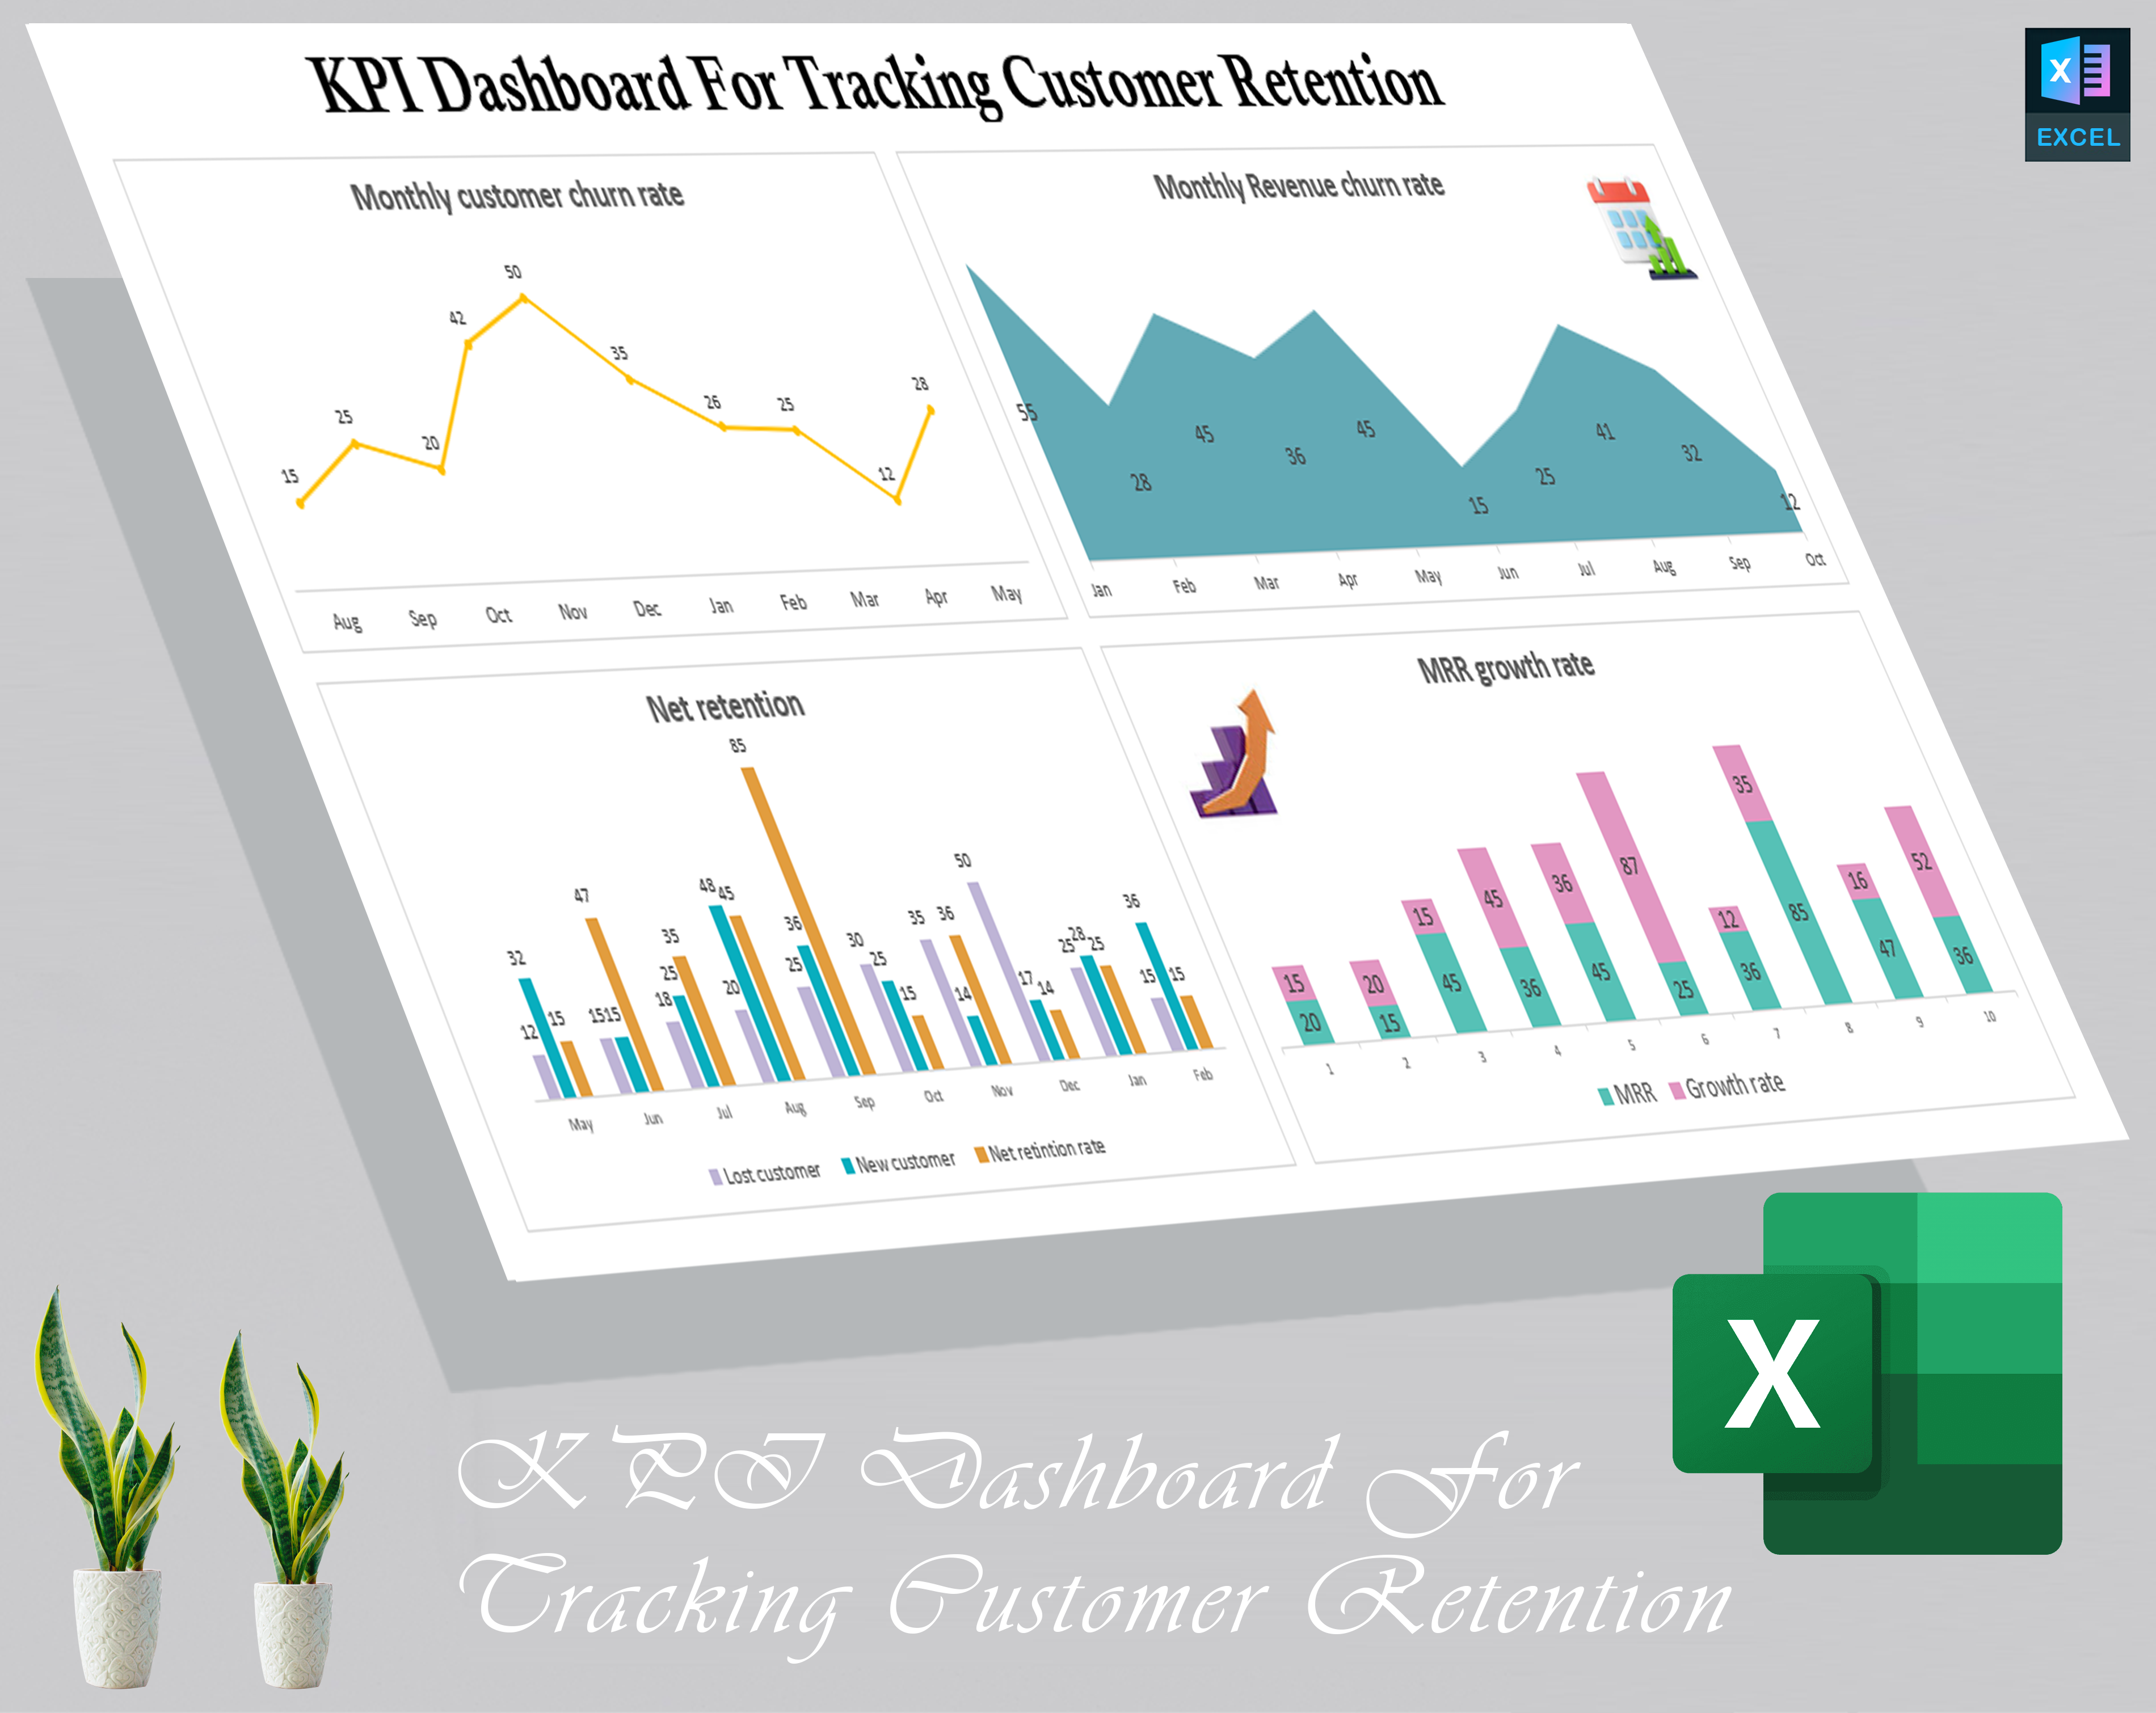 KPI Dashboard For Tracking Customer Retention